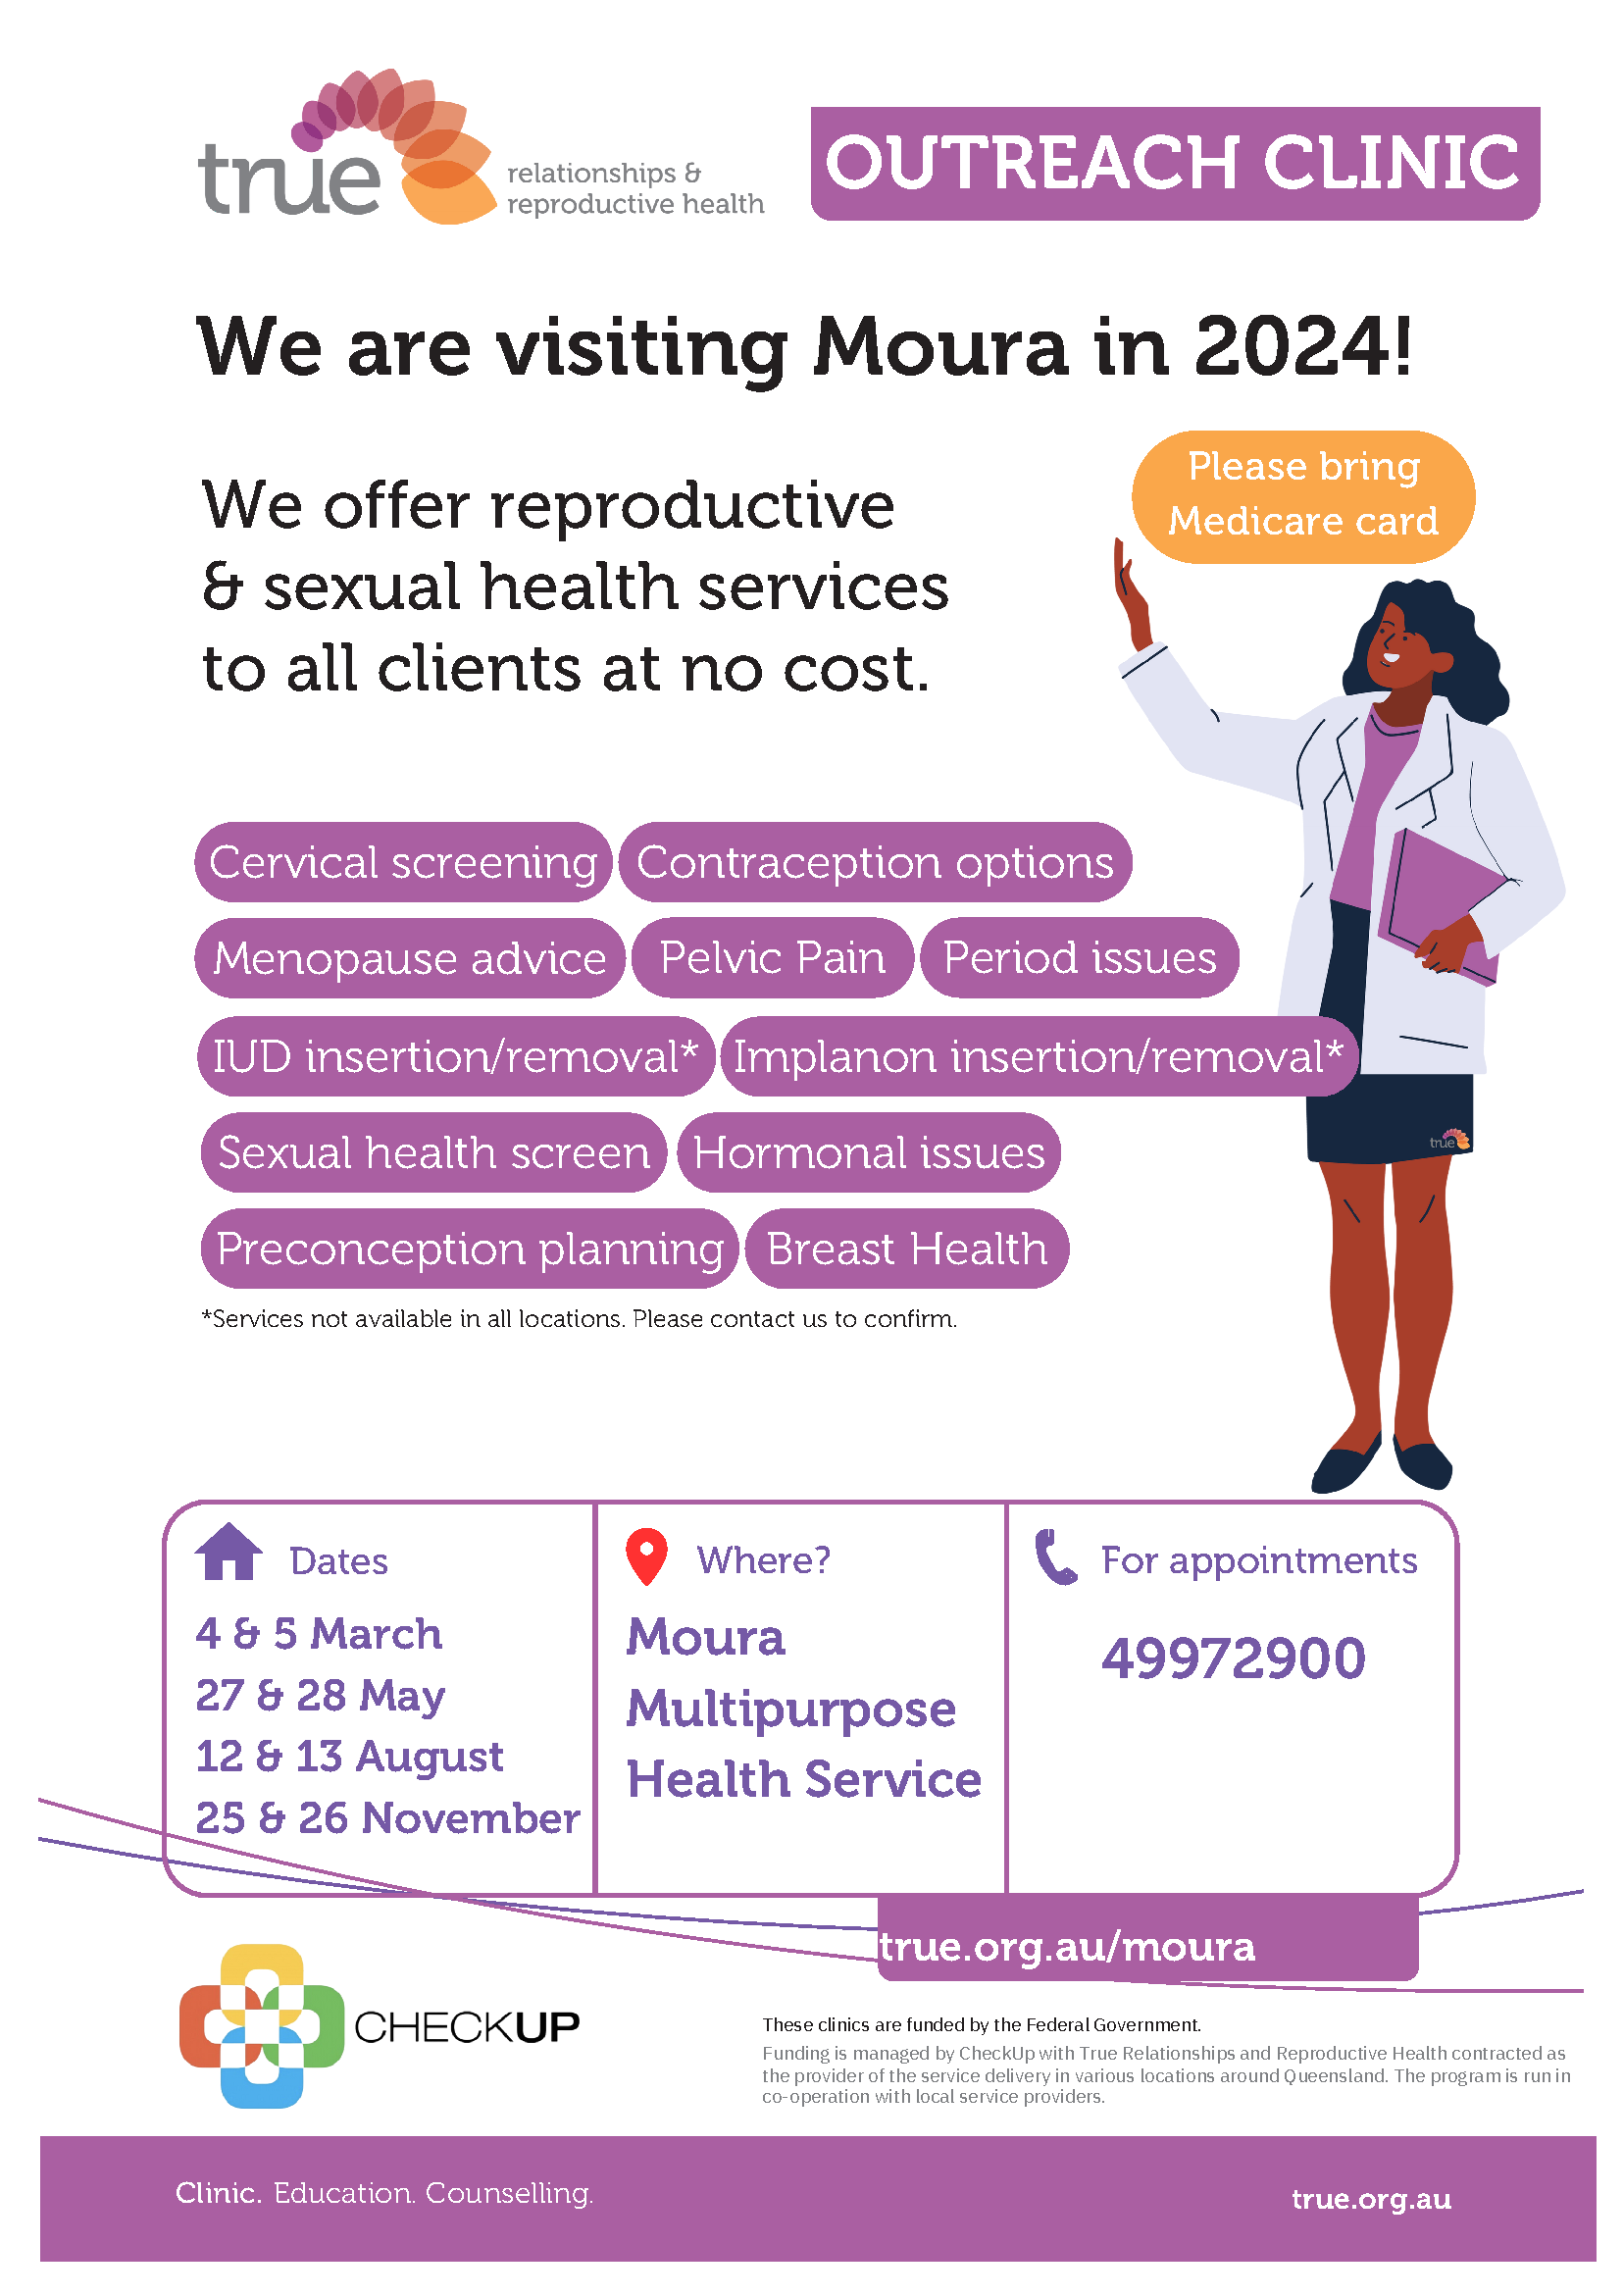 True outreach clinic moura 2024